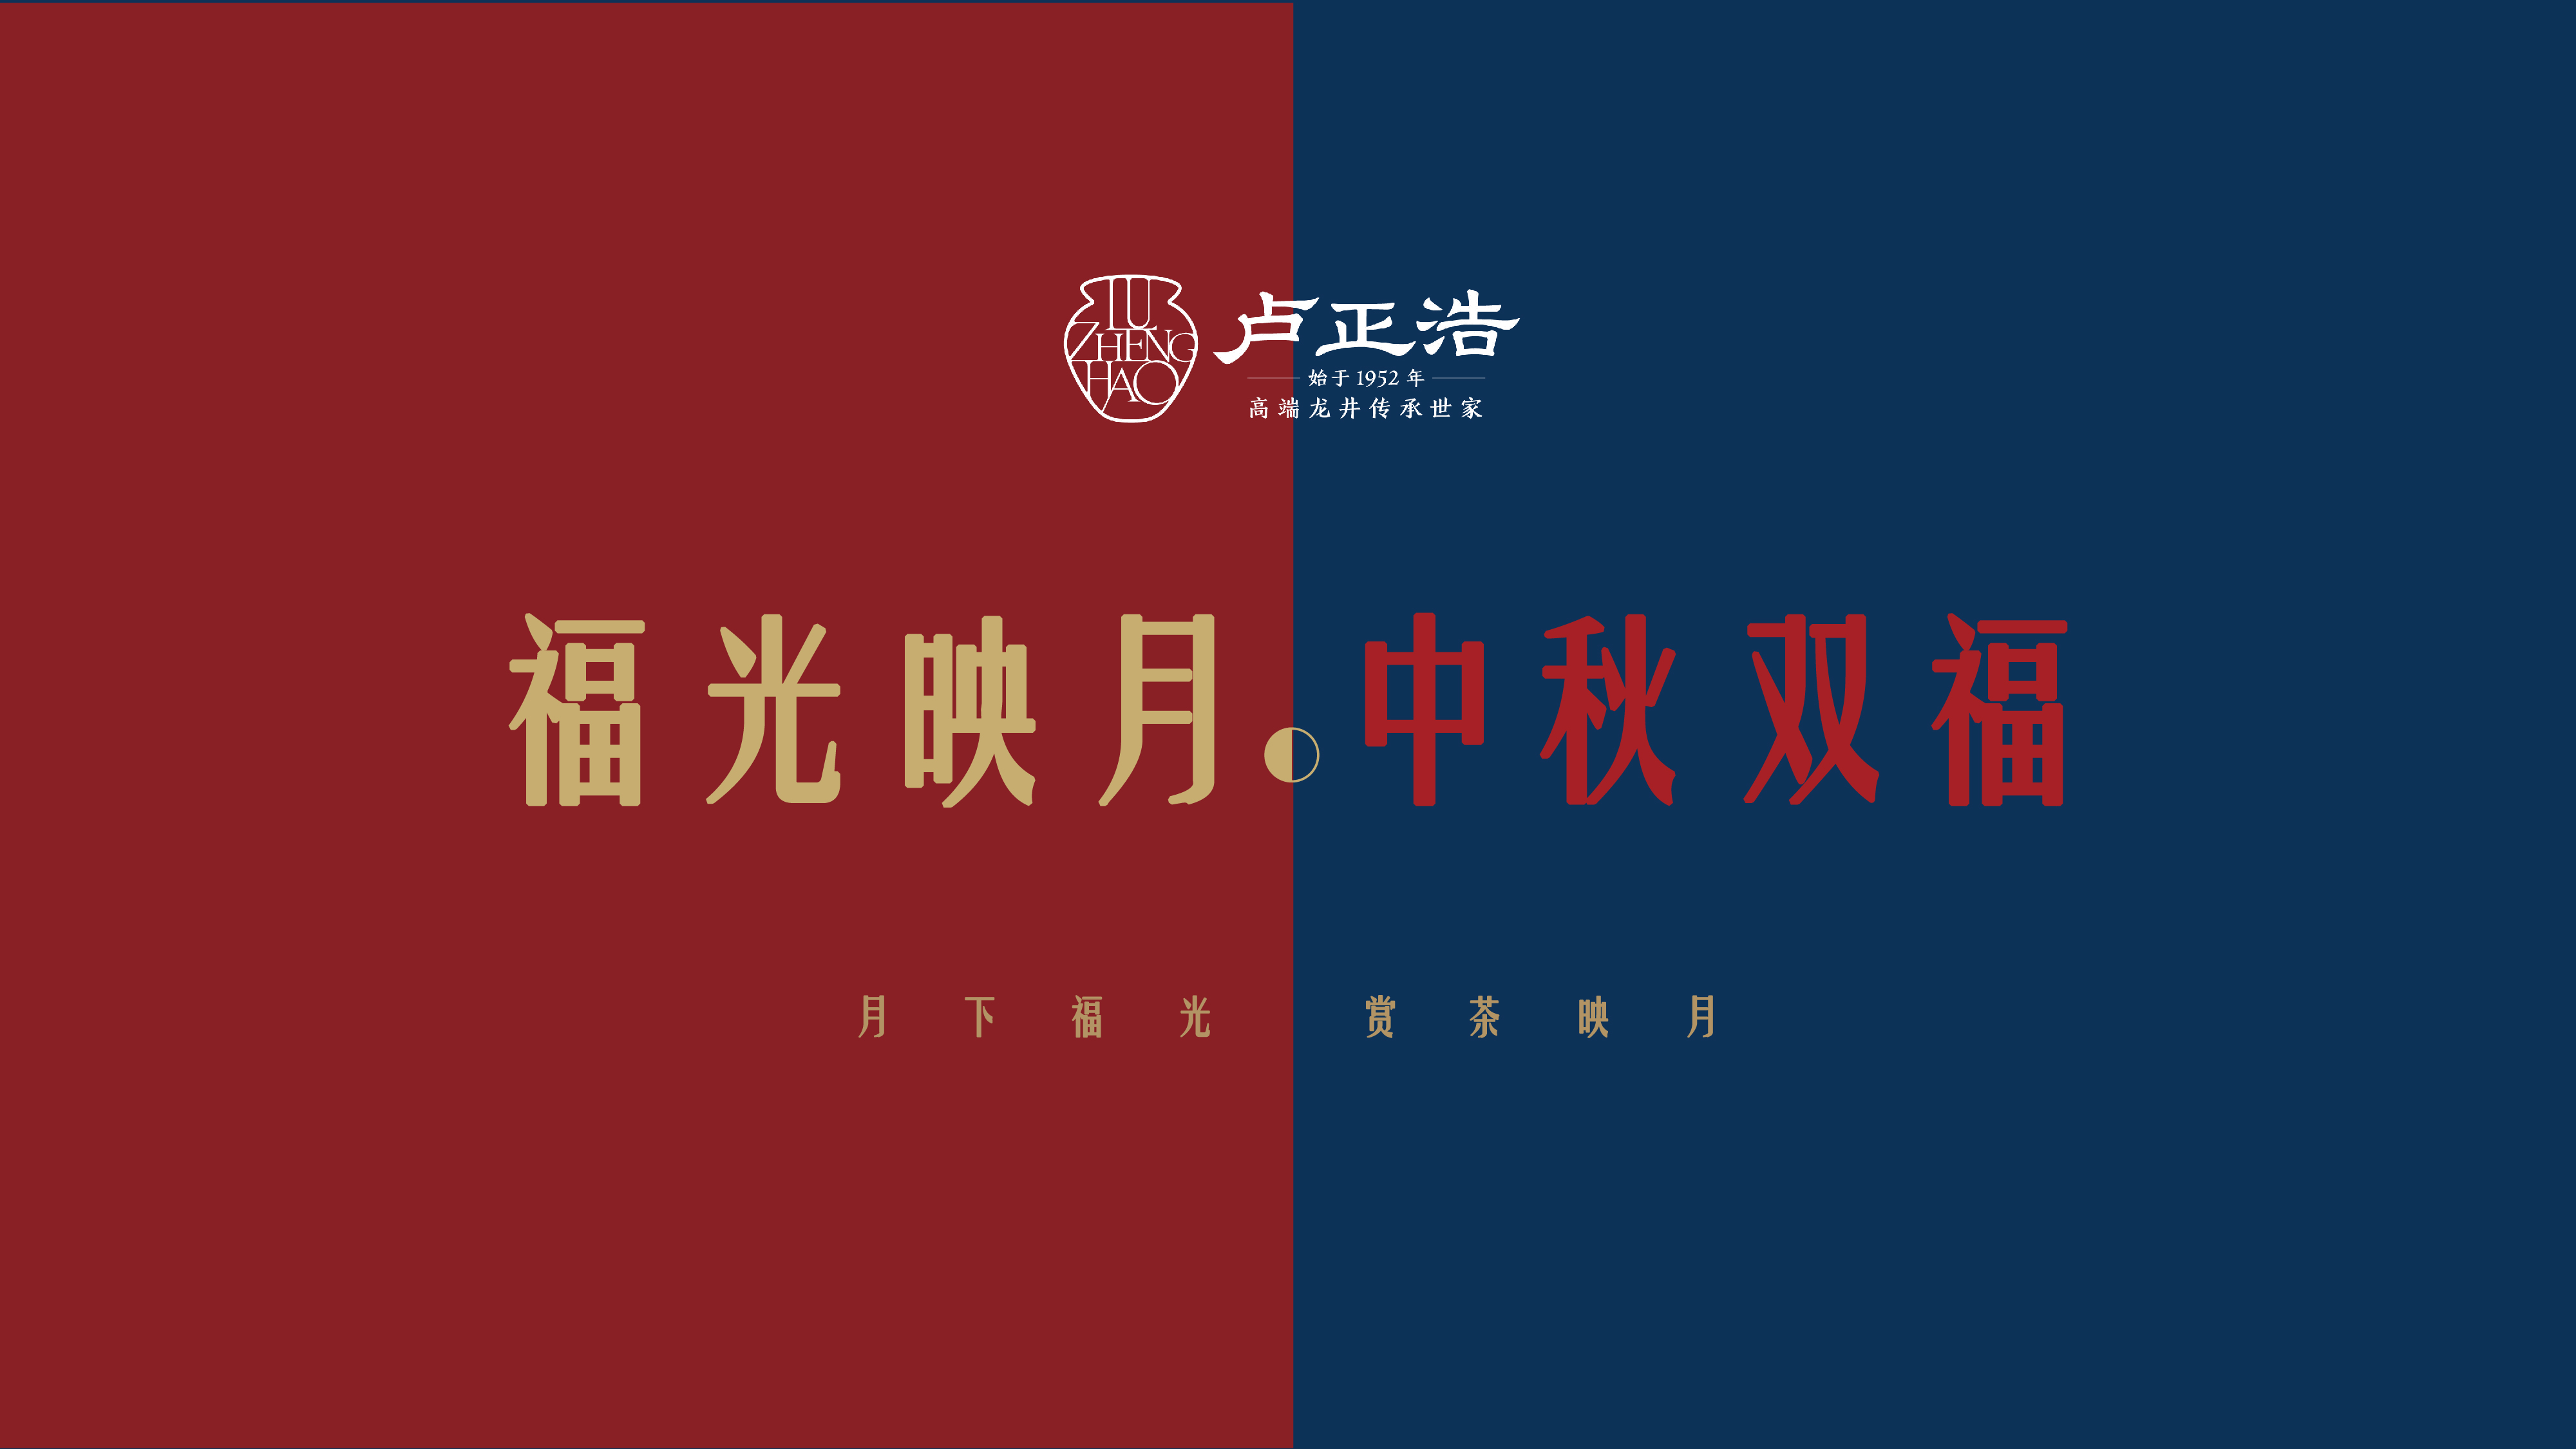 卢正浩福光印月双福礼盒红+蓝组合套装（明前龙井茶50g+古树滇红50g）100g*2盒（单位：套）